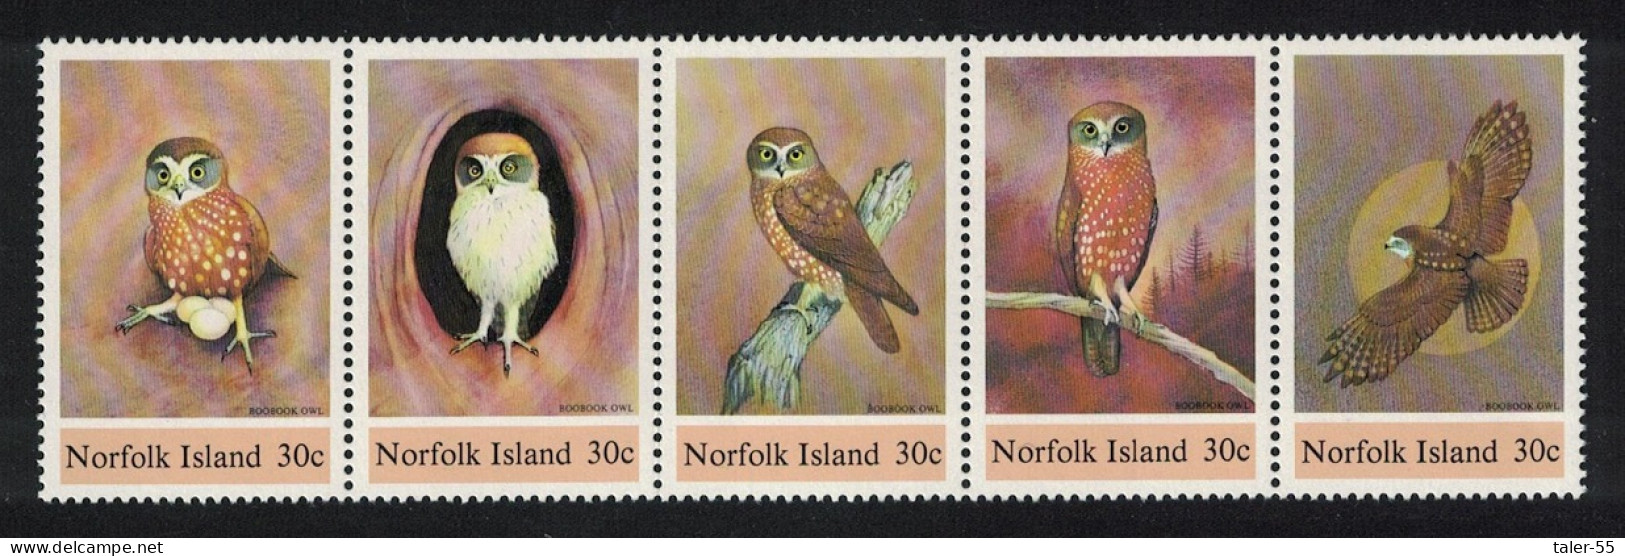 Norfolk Birds Boobook Owl Strip Of 5 1984 MNH SG#338-342 Sc#343 - Norfolk Eiland